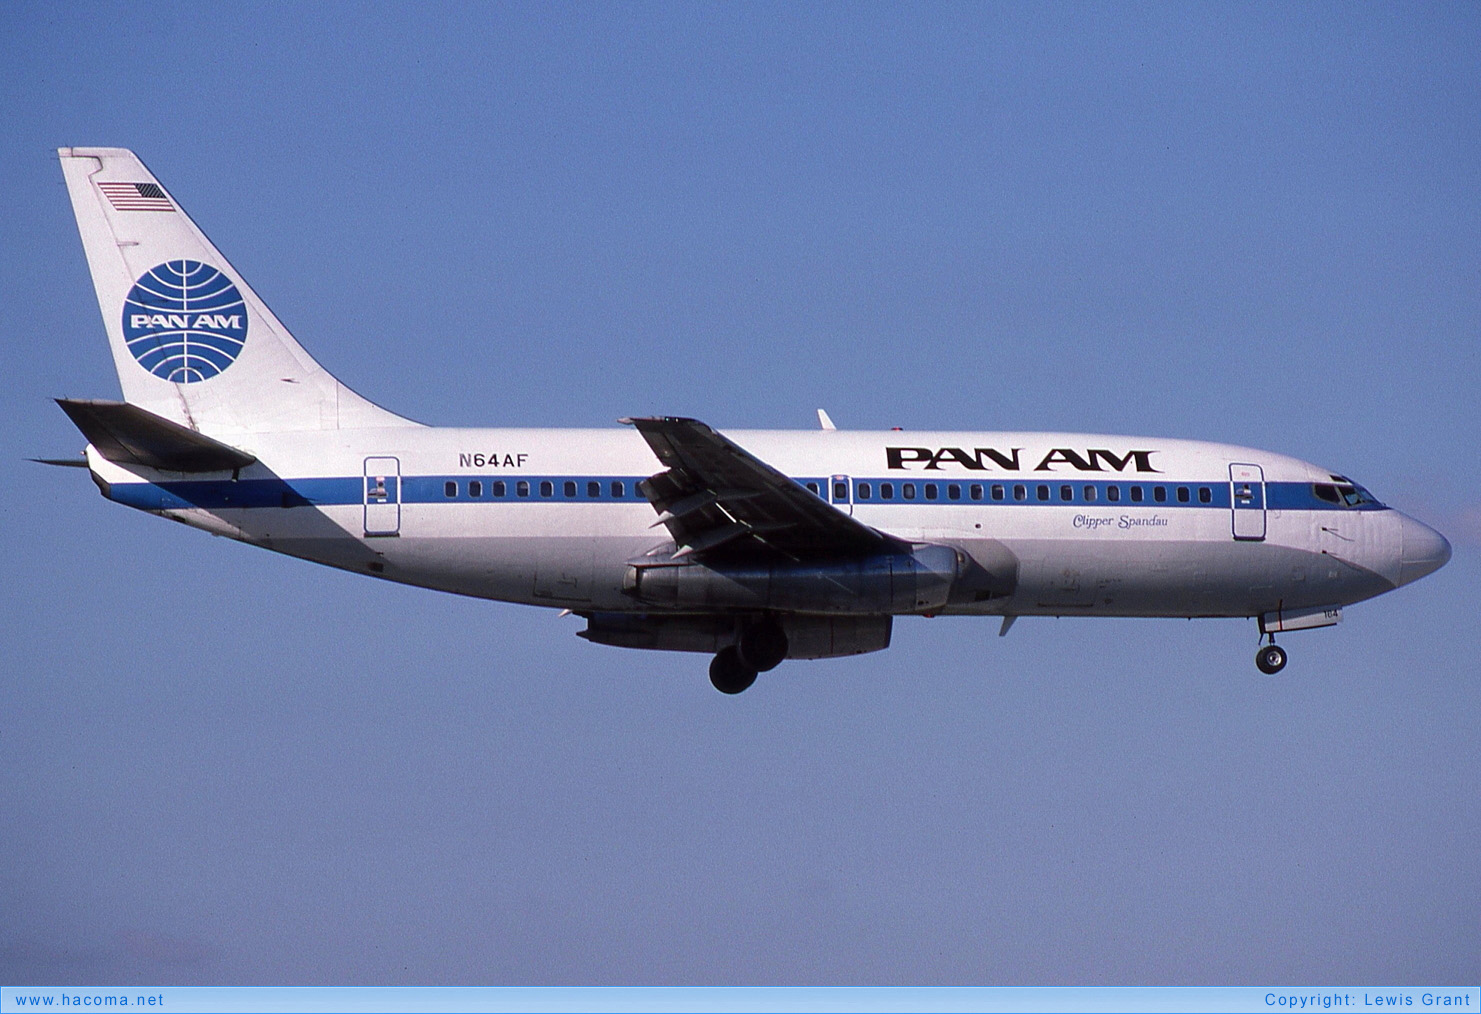 Photo of N64AF - Pan Am Clipper Spandau / San Diego / Morning Glory - Miami International Airport - Nov 21, 1987